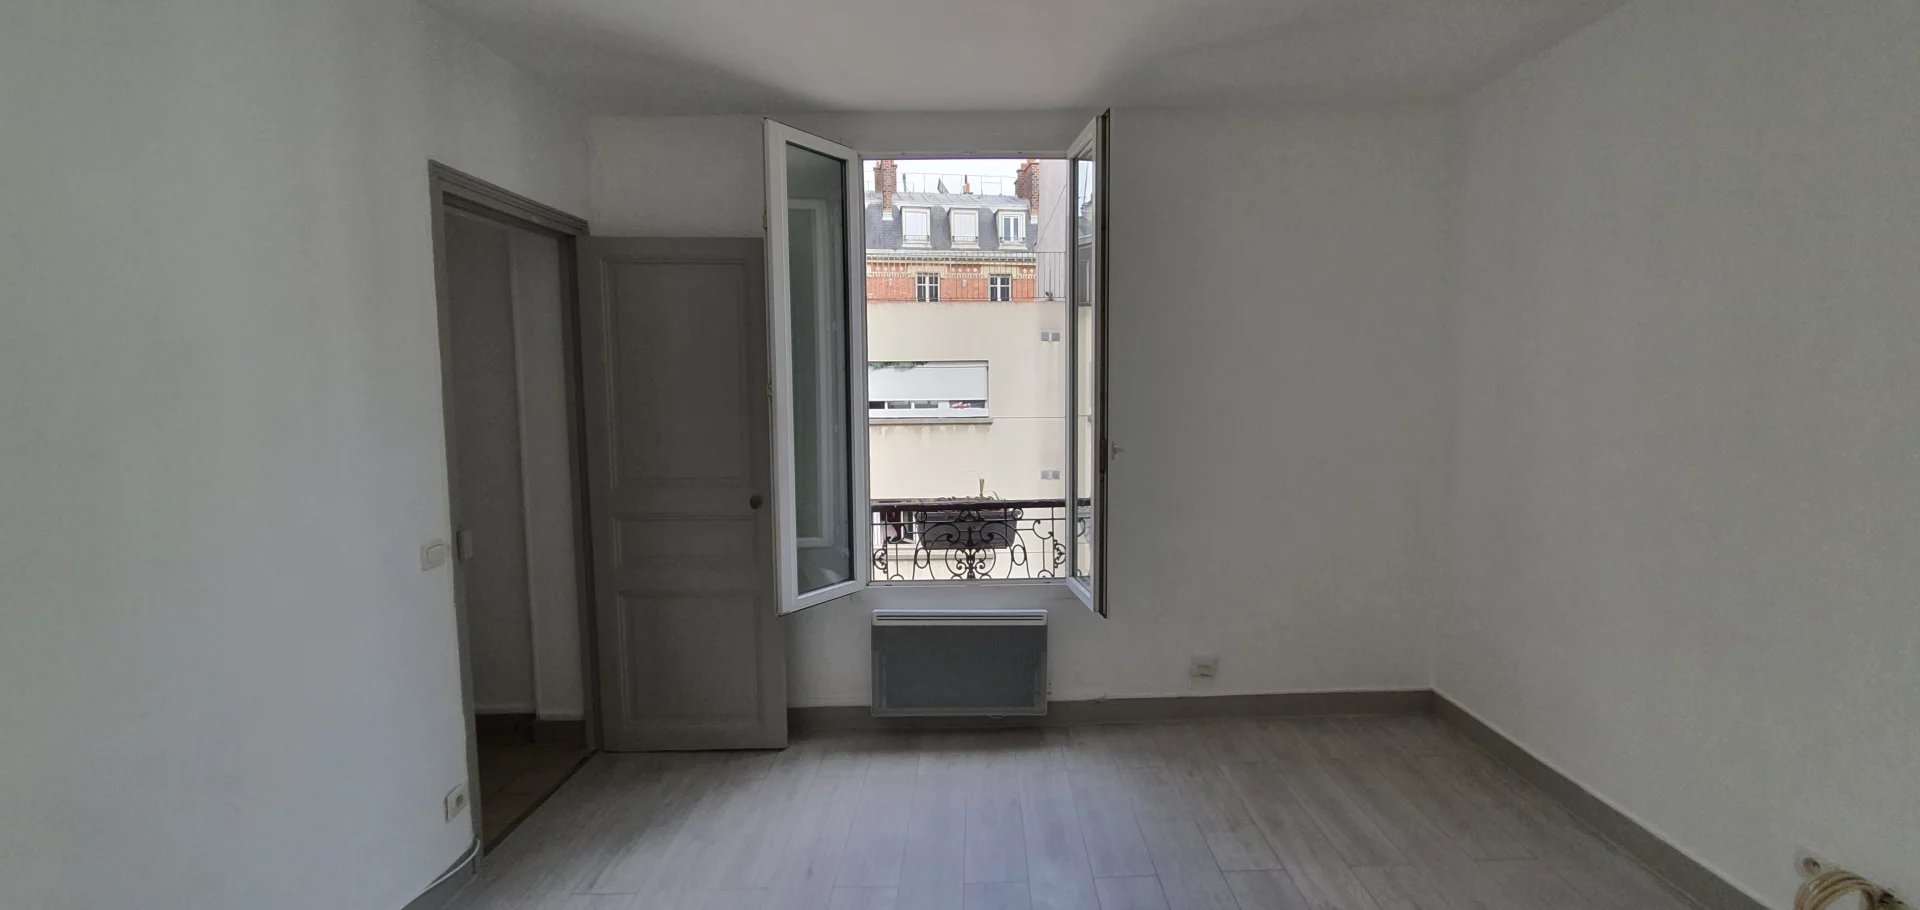 One-room apartment (T1bis) of 25.09 m² rue des Moines Paris 17ème